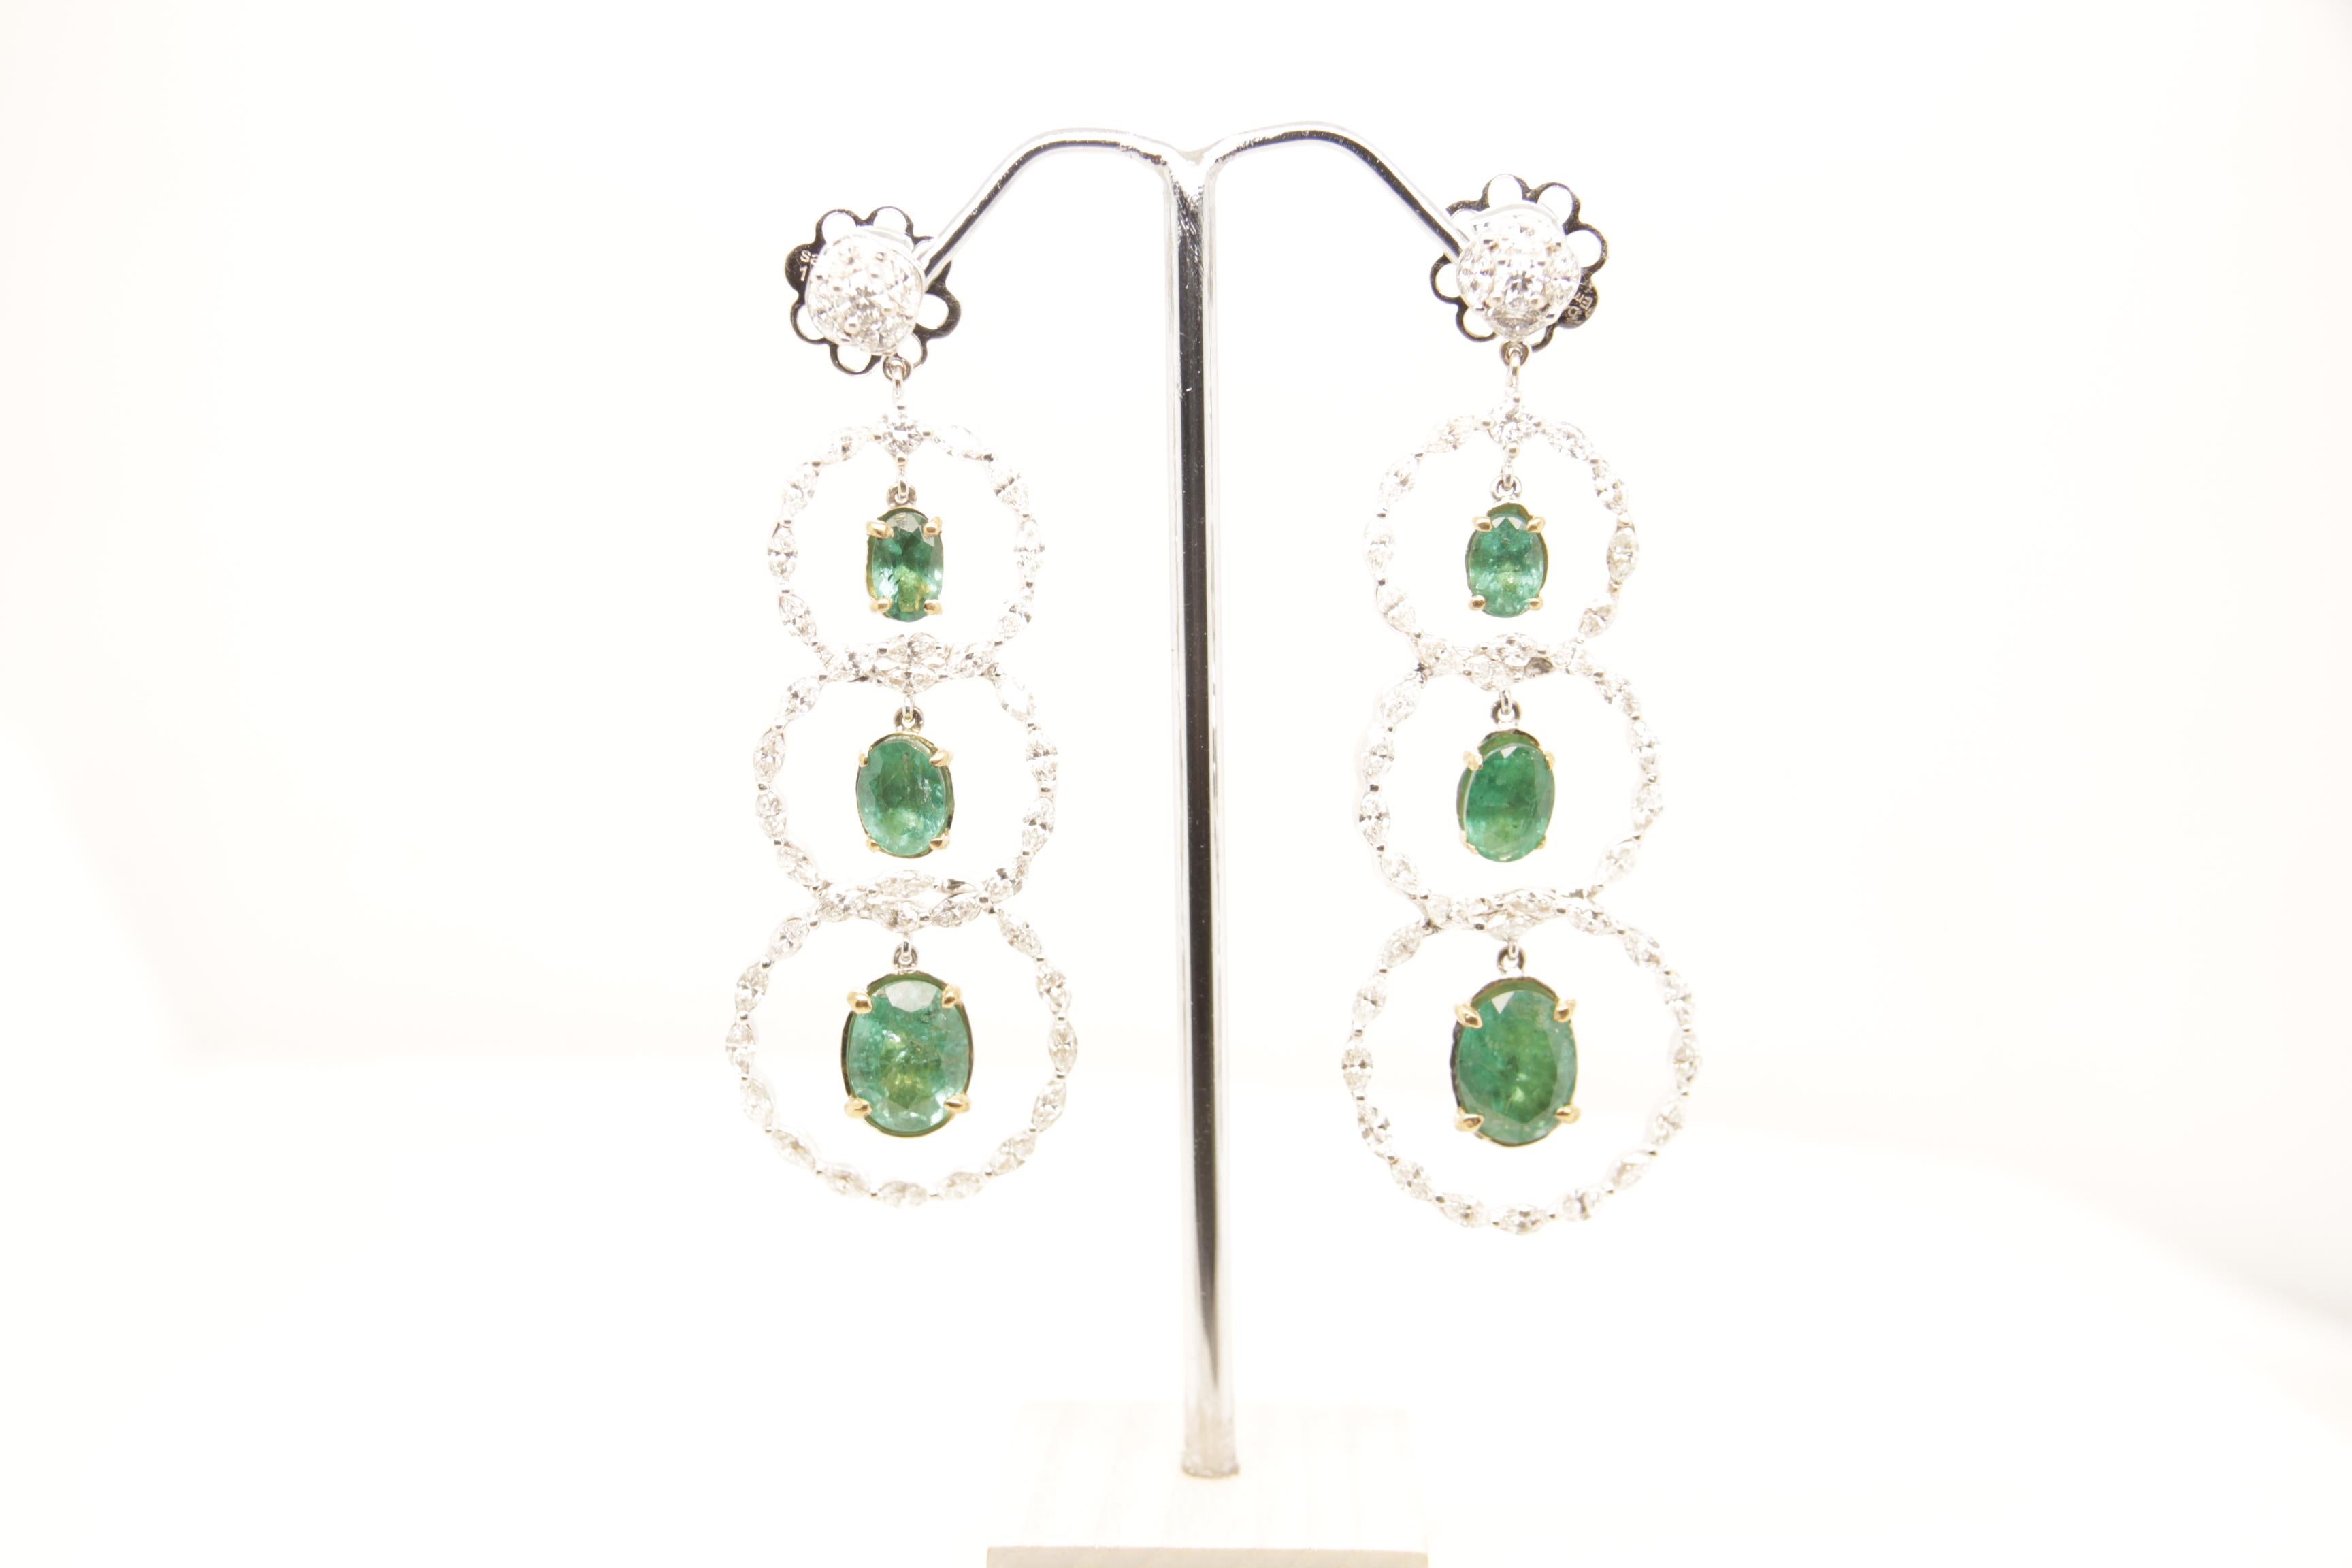 Ein brandneuer Smaragd- und Diamantohrring aus 18 Karat Gold. Das Gesamtgewicht der Smaragde beträgt 5,96 Karat und das Gesamtgewicht der Diamanten 4,08 Karat. Das Gesamtgewicht des Ohrrings beträgt 15,73 Gramm.